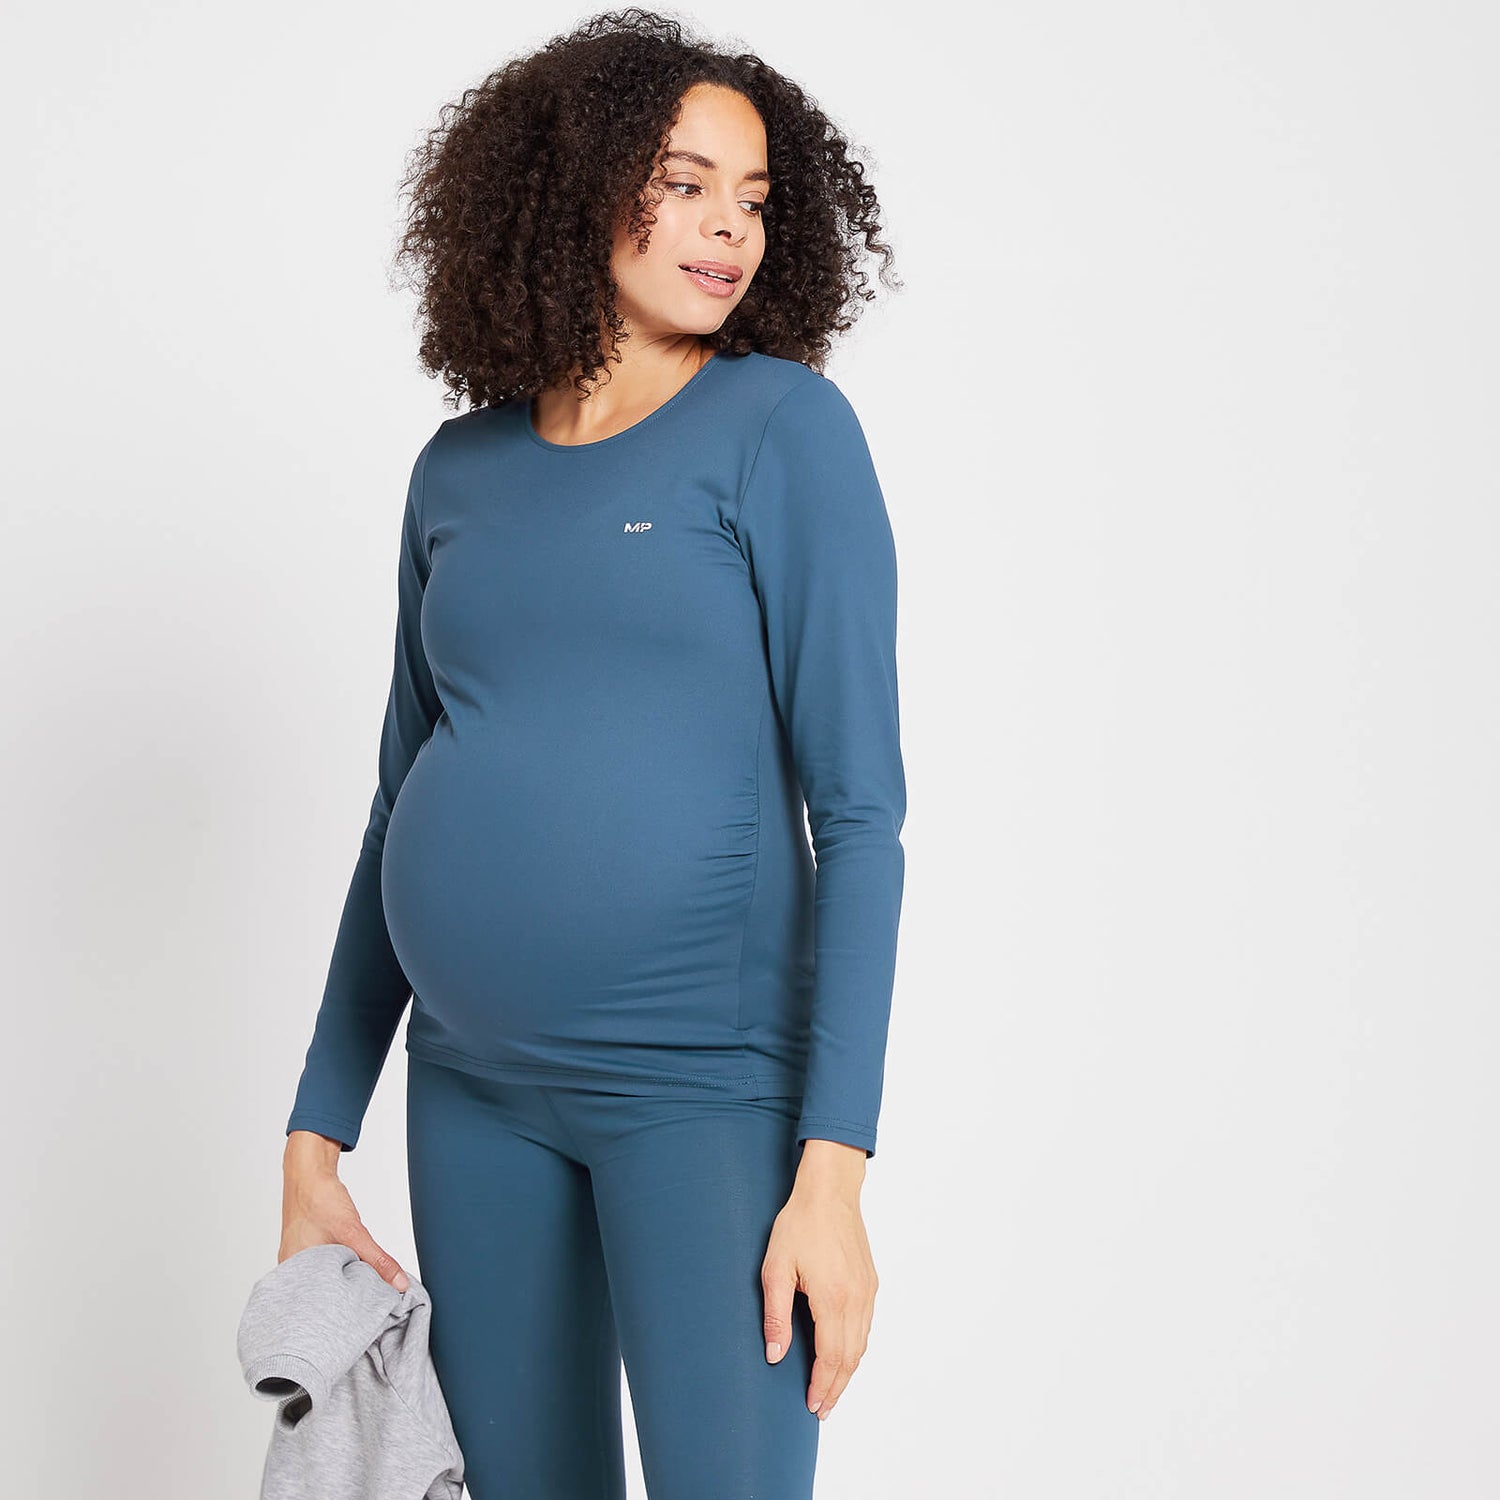 MP Women's Power Maternity Long Sleeve Top - Dust Blue - XXS